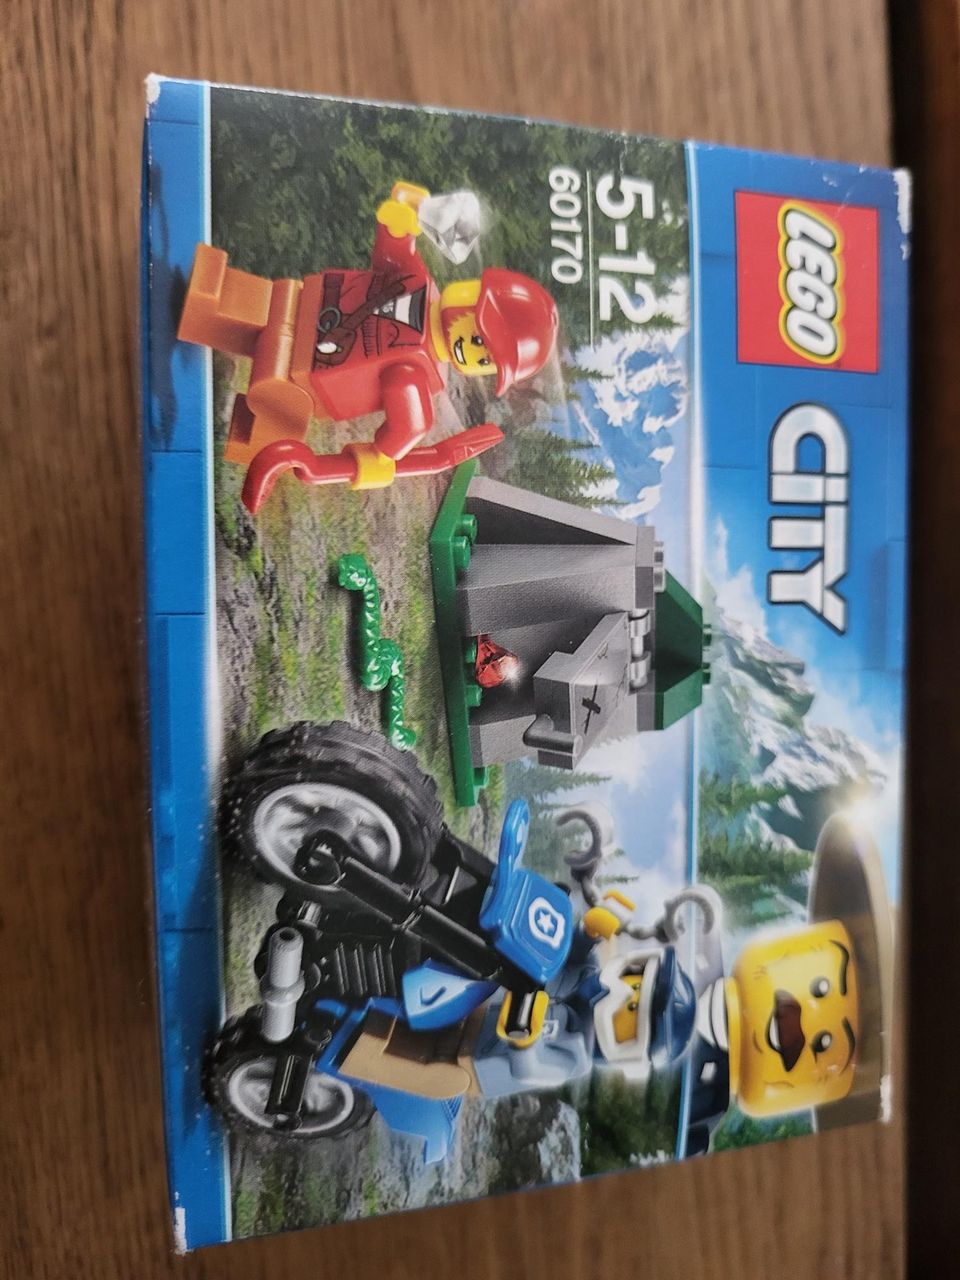 Lego city 60170